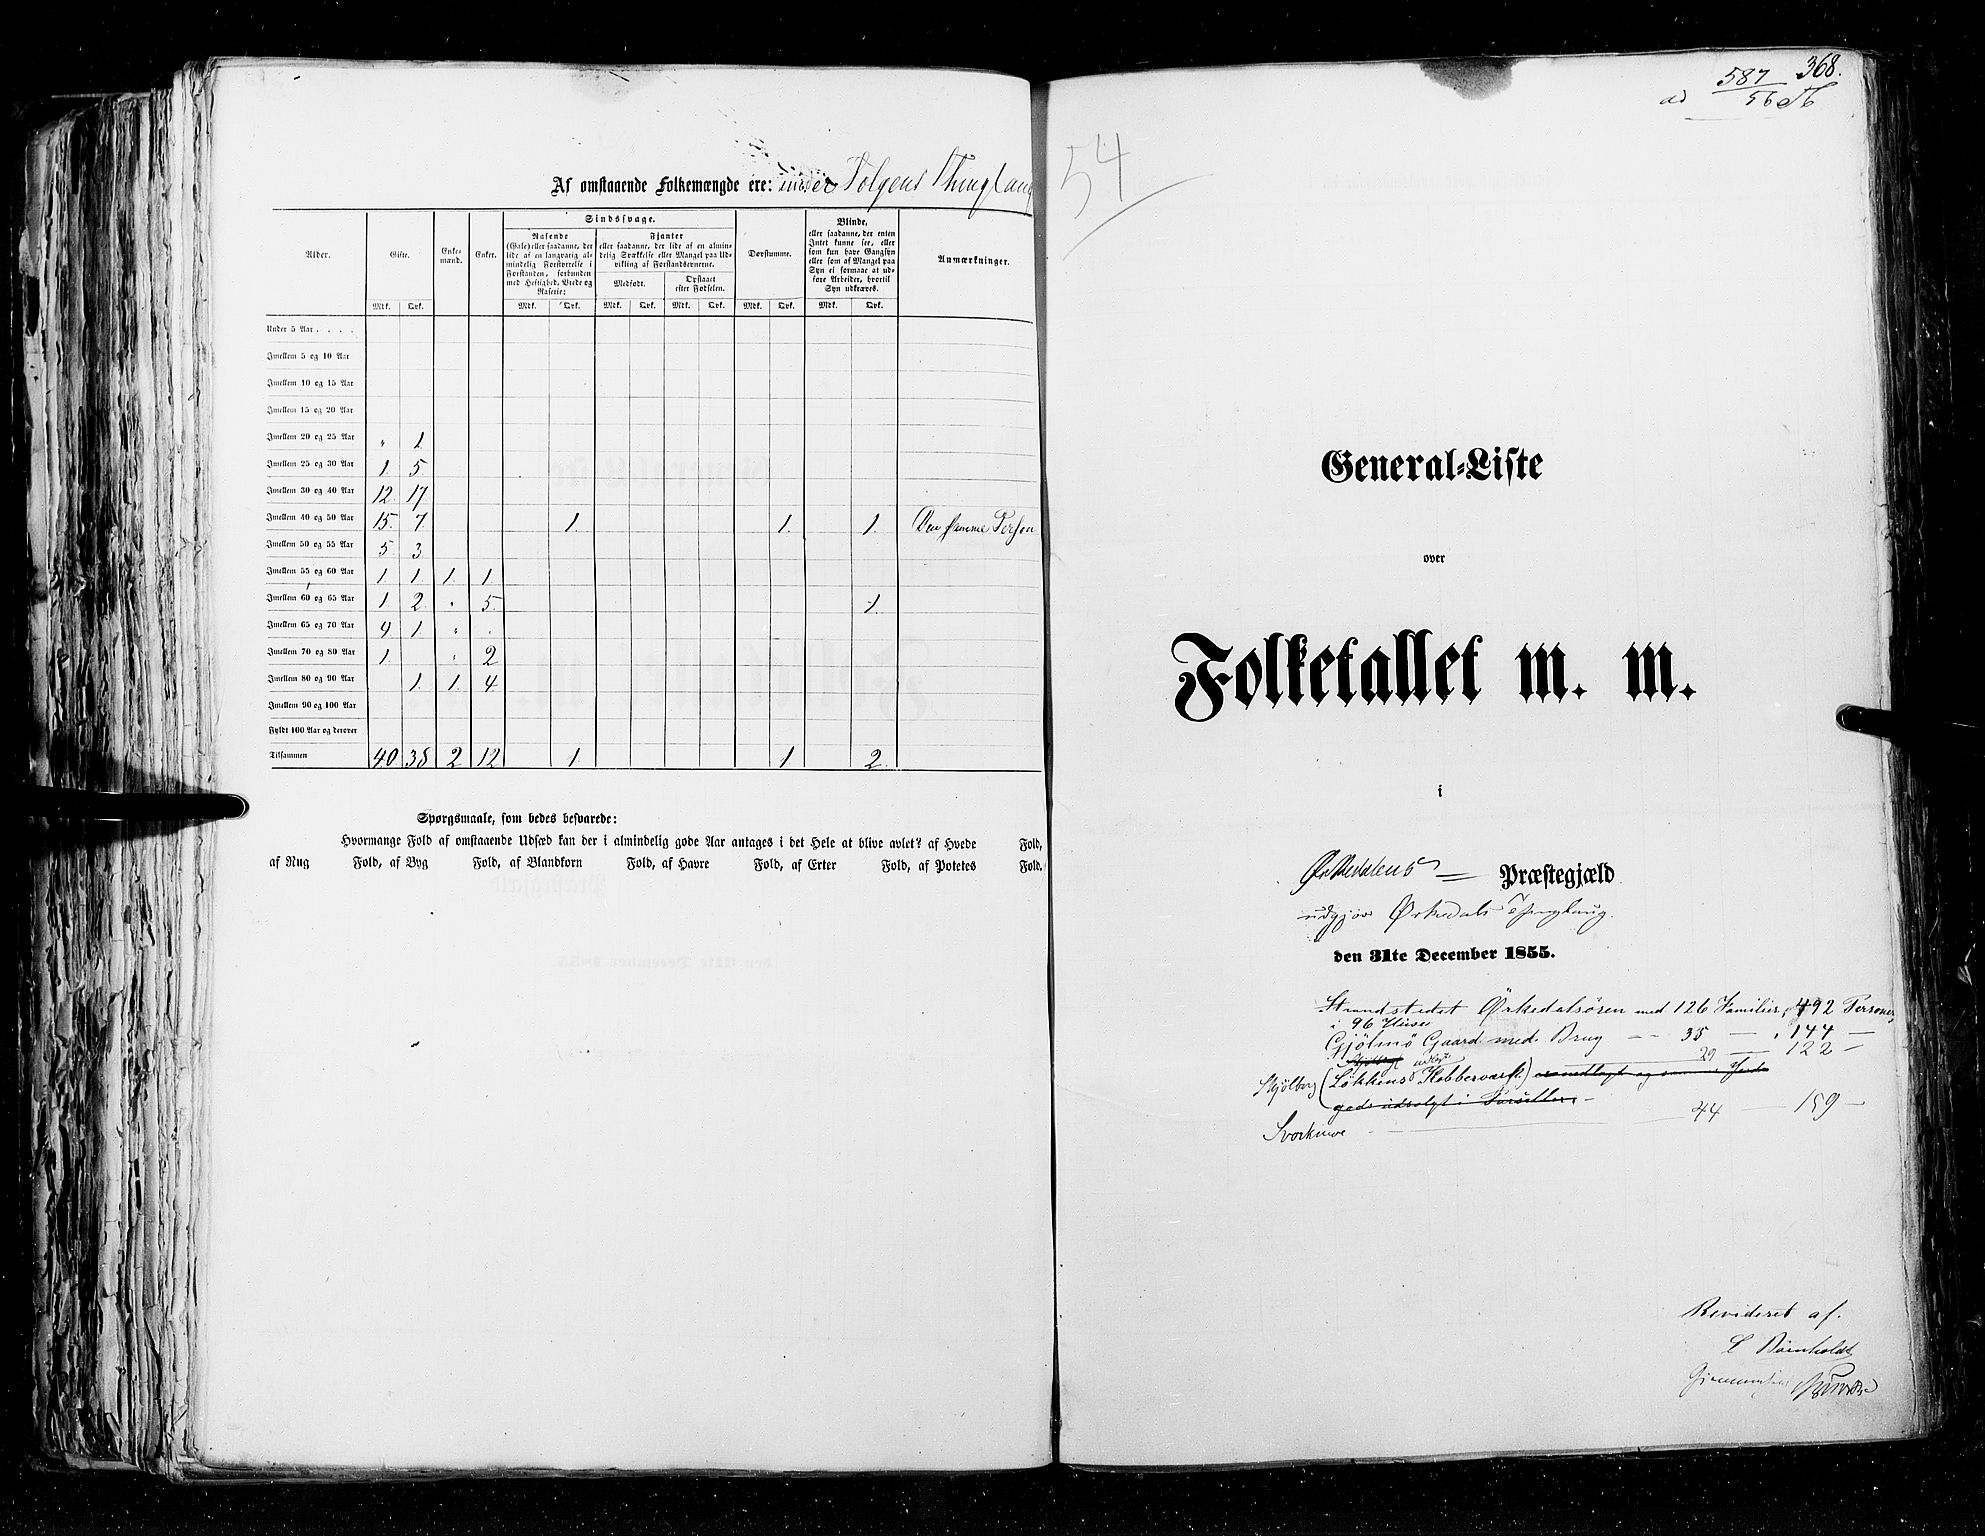 RA, Folketellingen 1855, bind 5: Nordre Bergenhus amt, Romsdal amt og Søndre Trondhjem amt, 1855, s. 368